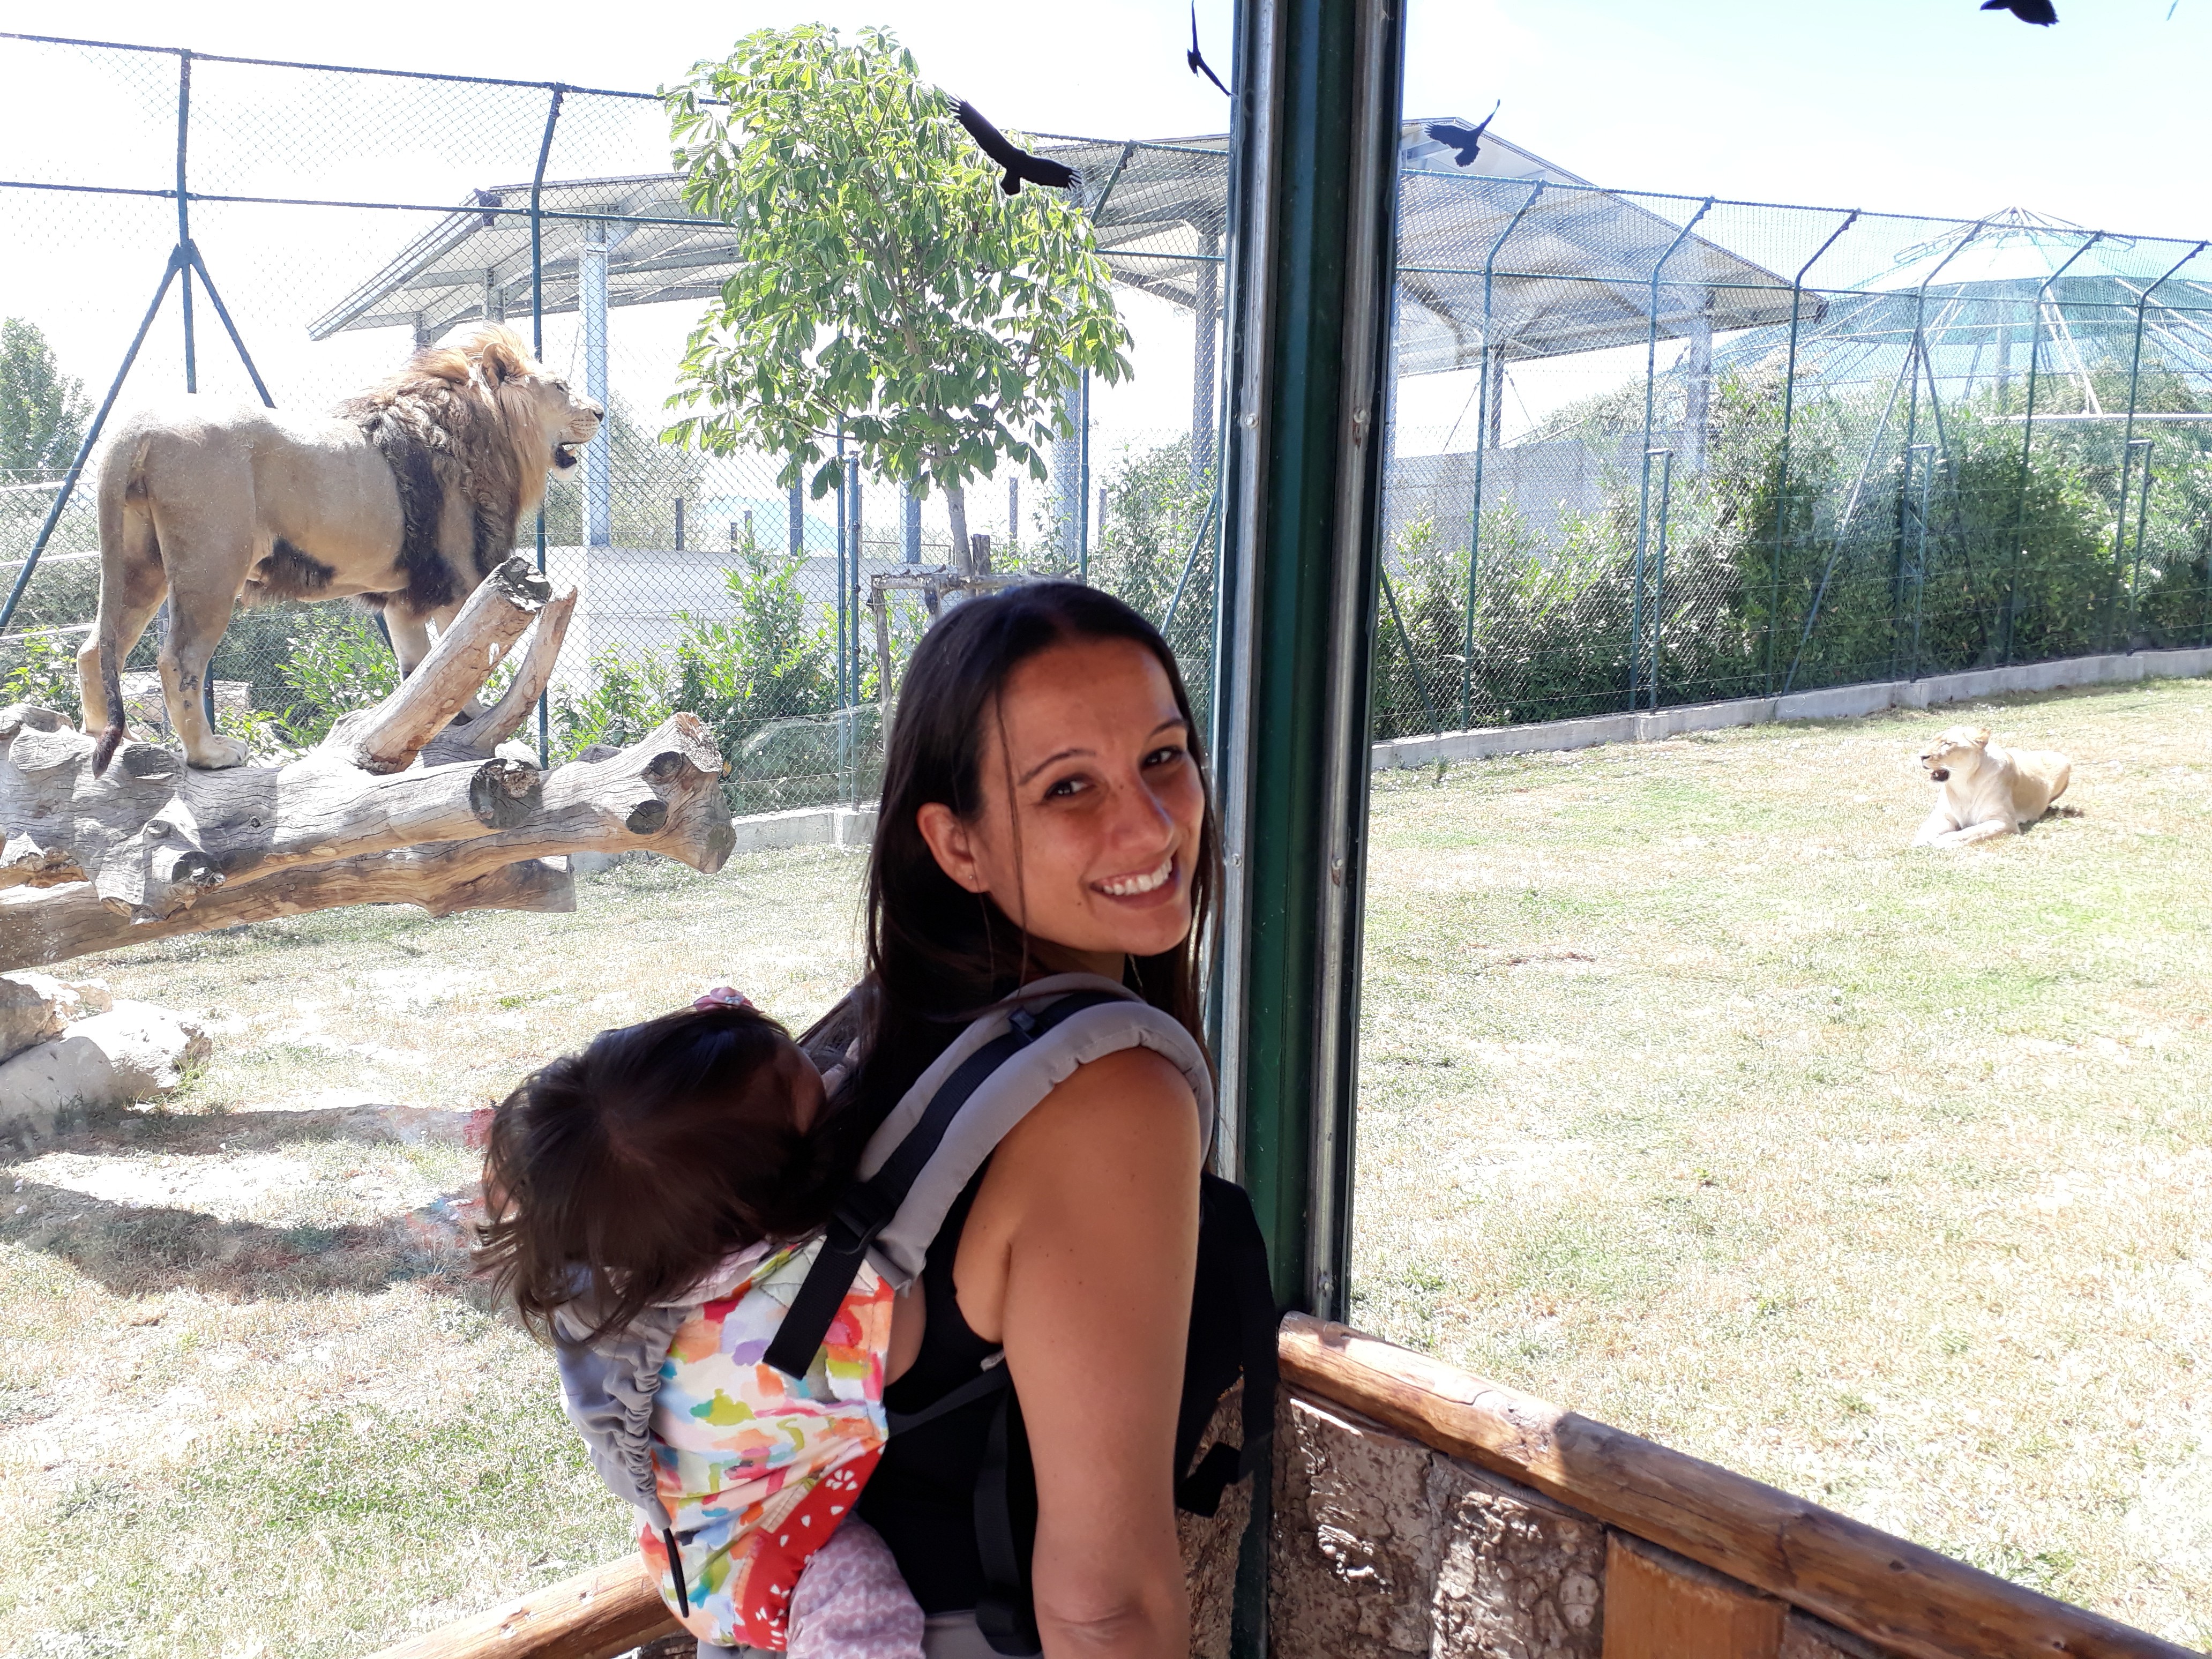 Visita allo zoo delle Maitine (BN), orari e prezzi